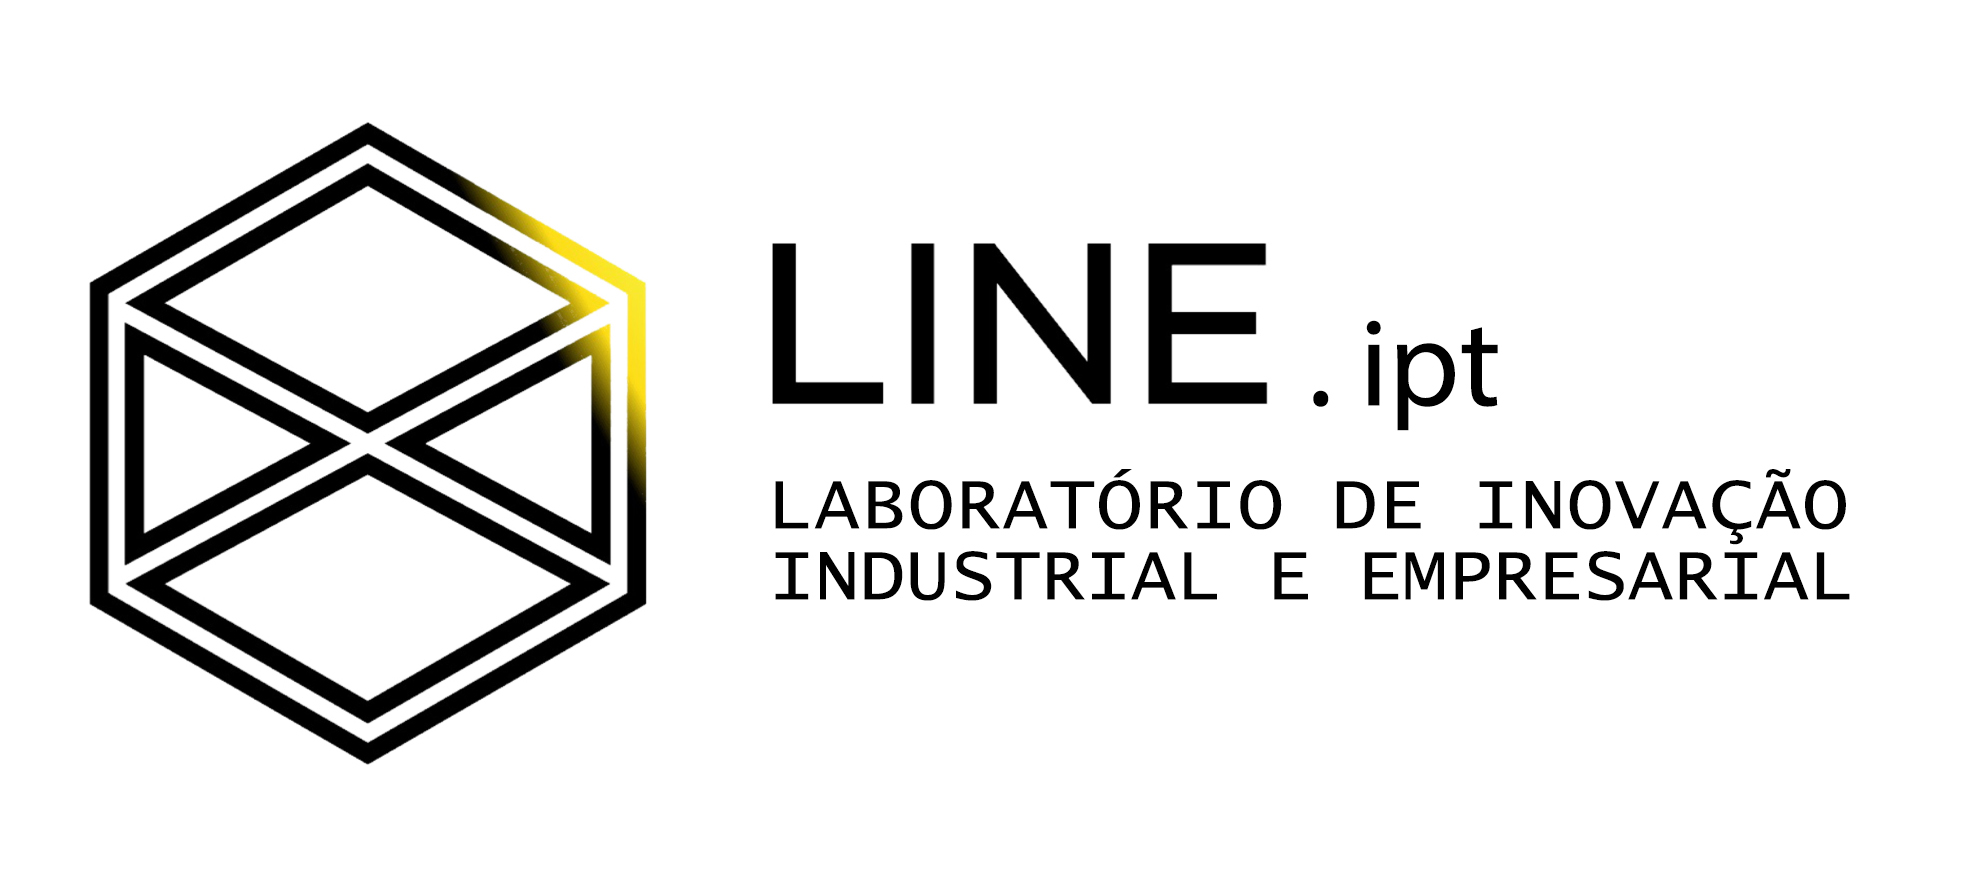 Line.IPT